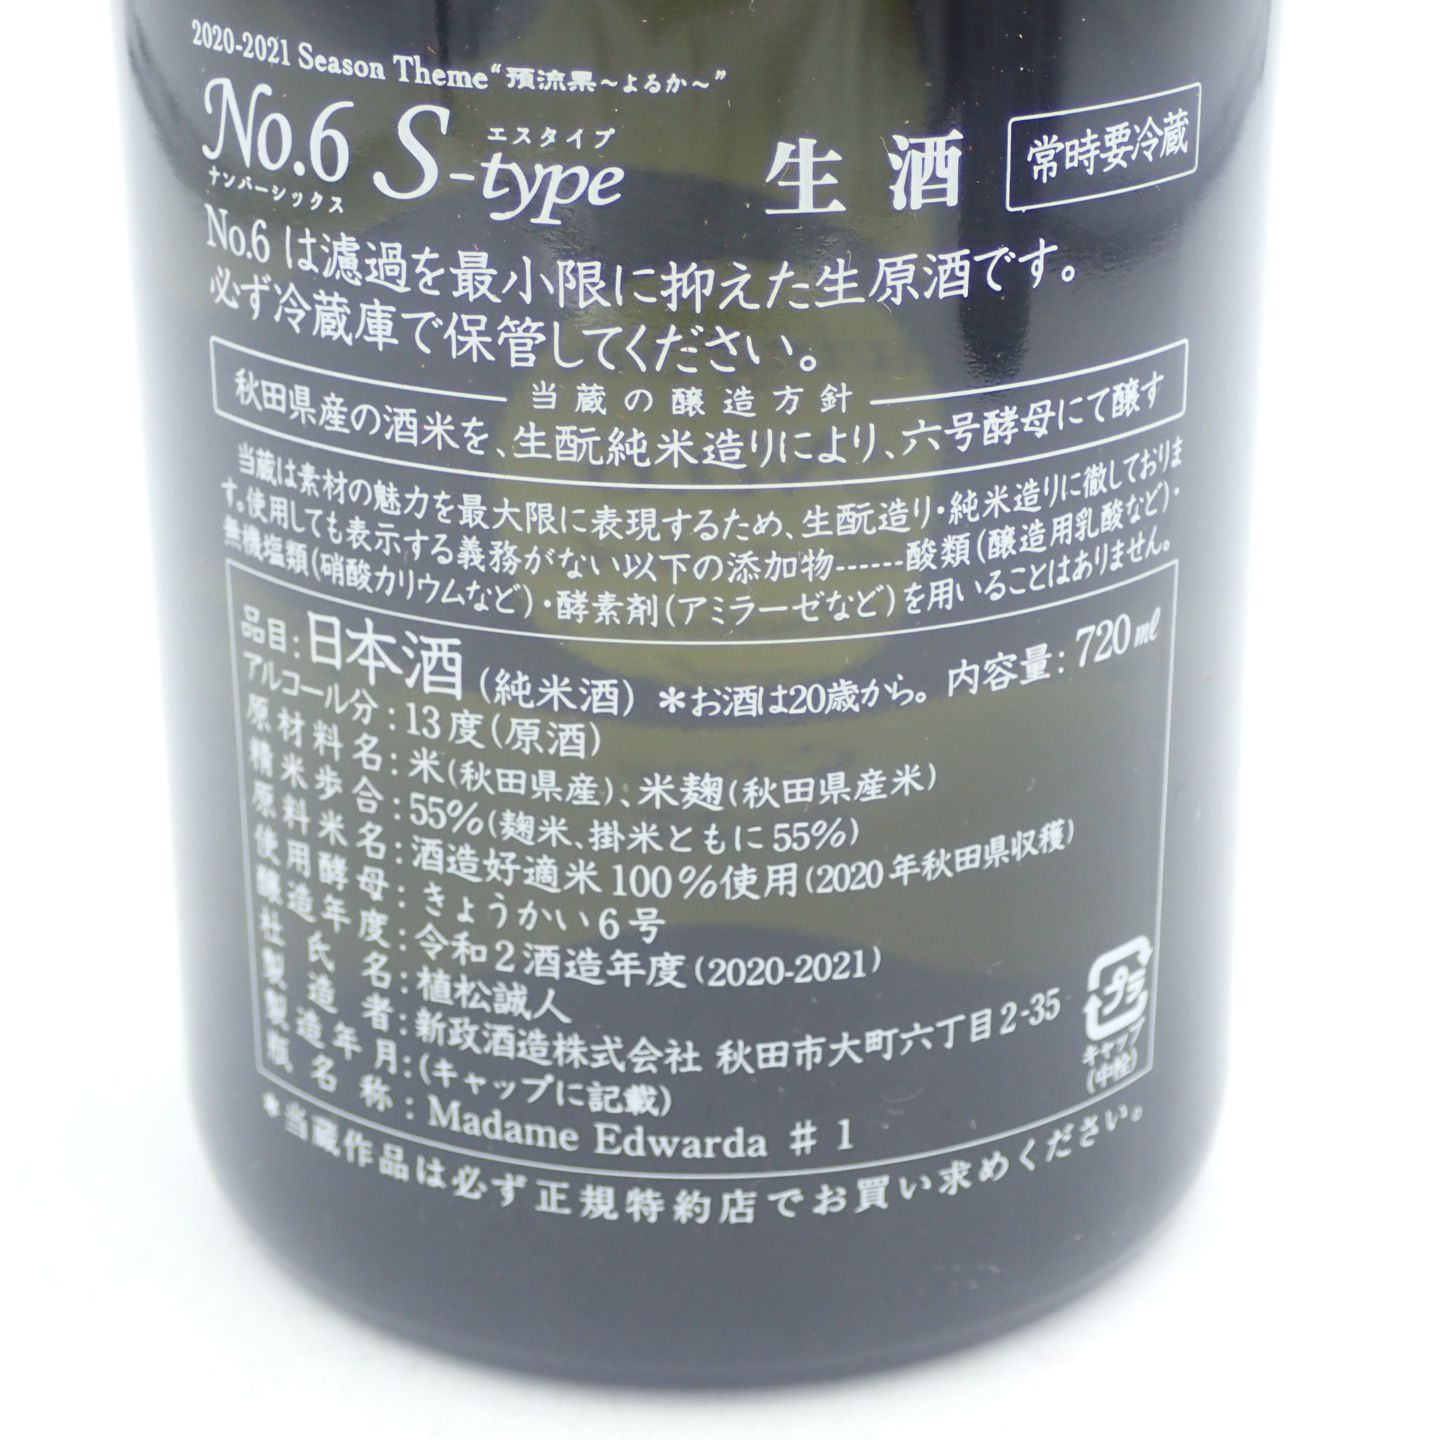 セット】新政 純米酒 No.6 エッセンス S-type 2本セット【V】 - bigidearesources.com